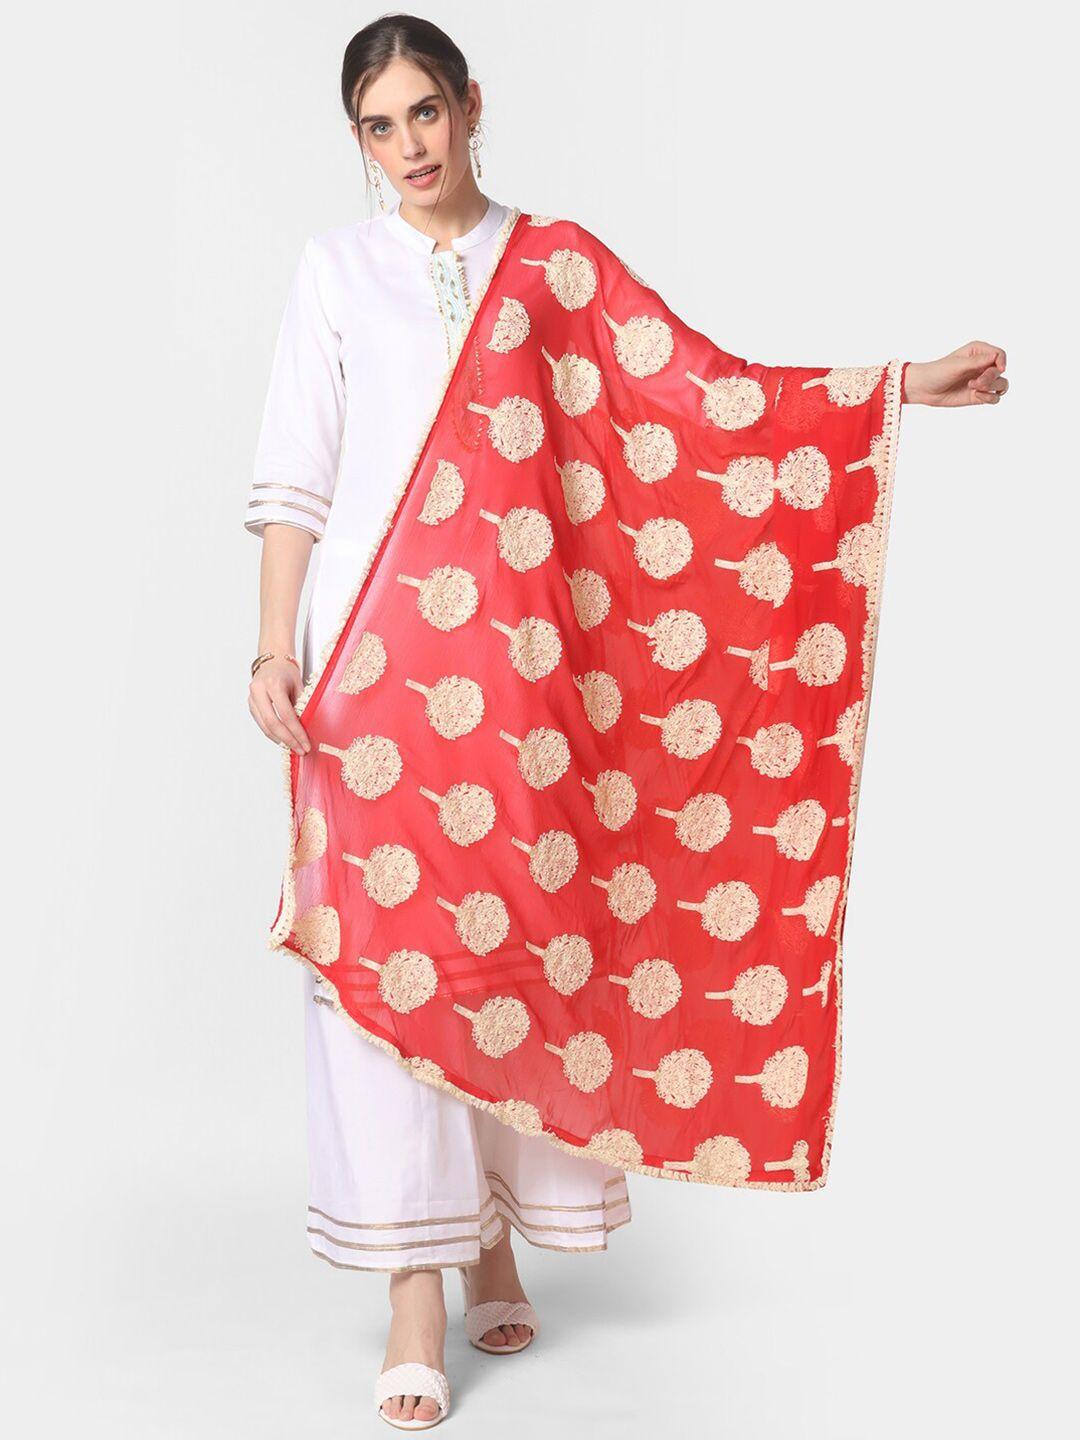 dupatta-bazaar-red-&-beige-ethnic-motifs-embroidered-dupatta-with-thread-work-details